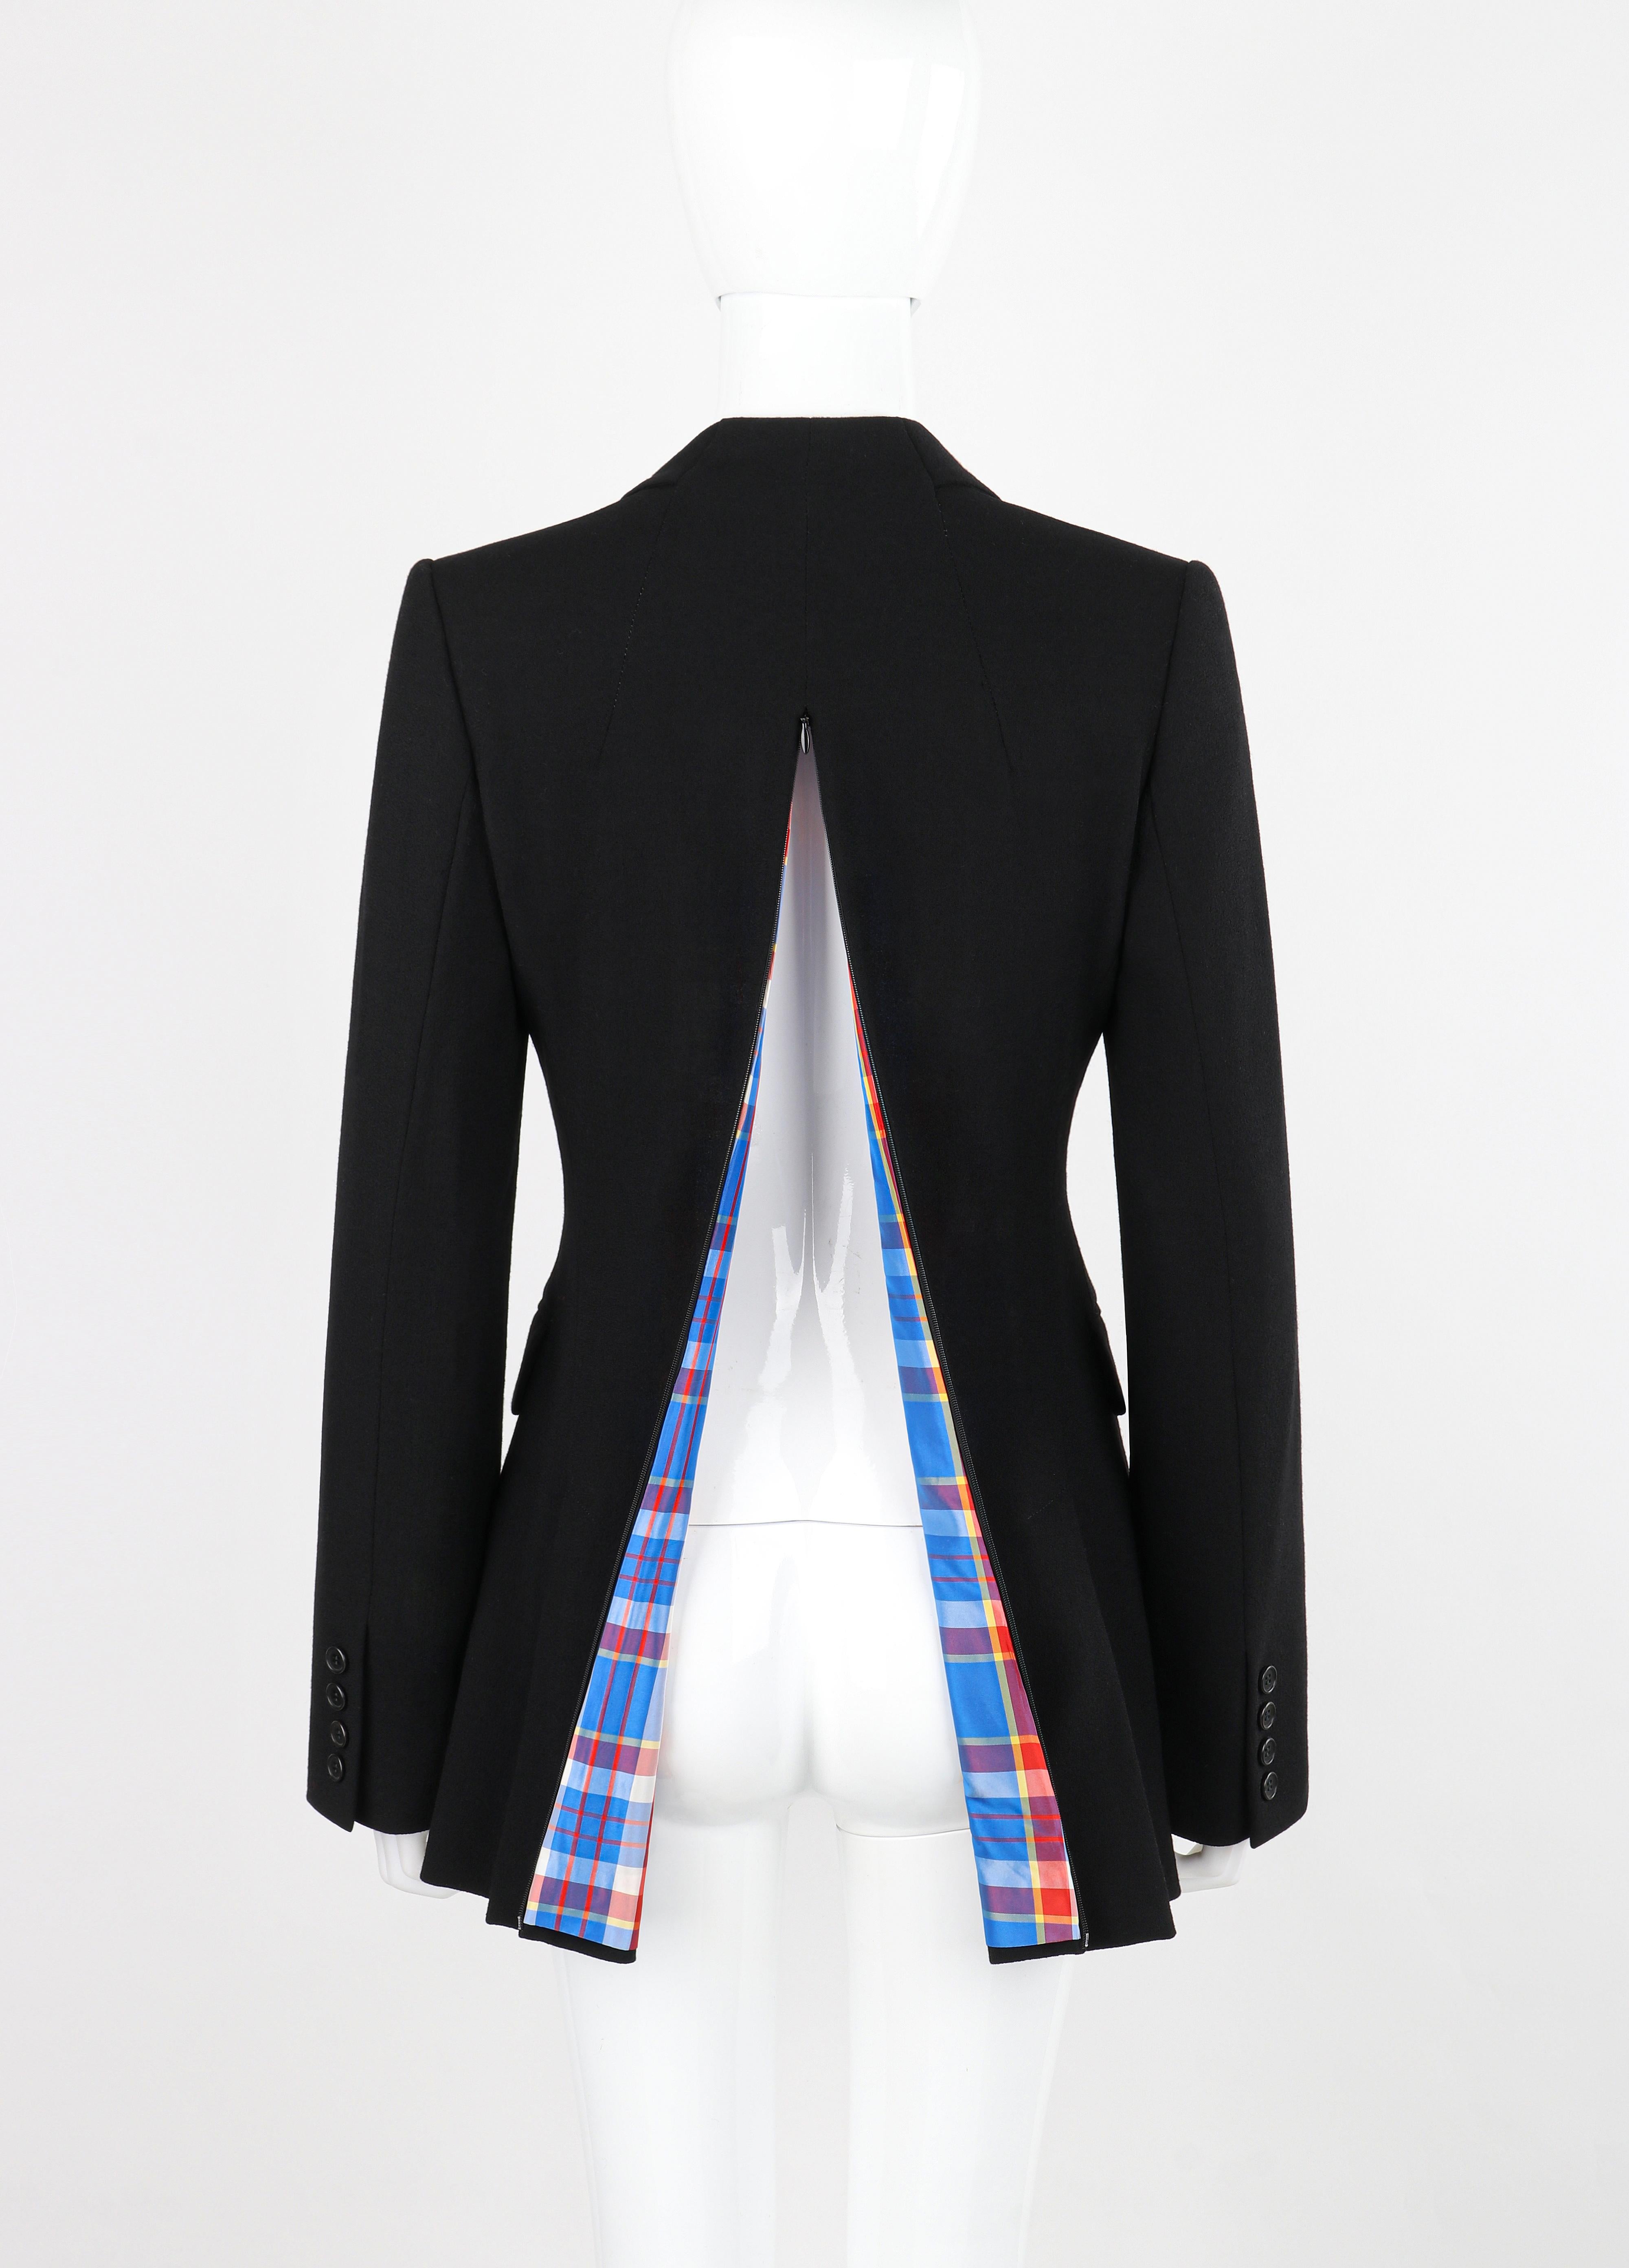 OWEN GASTER c.1990's Vtg Black Wool Structured Fitted Zip-Up Back Blazer Jacket RARE

Marque / Fabricant : Owen Gaster
Circa : 1990's
Concepteur : Owen Gaster
Style : Blazer
Couleur(s) : Nuances de noir, bleu, rouge, violet, jaune
Doublée :